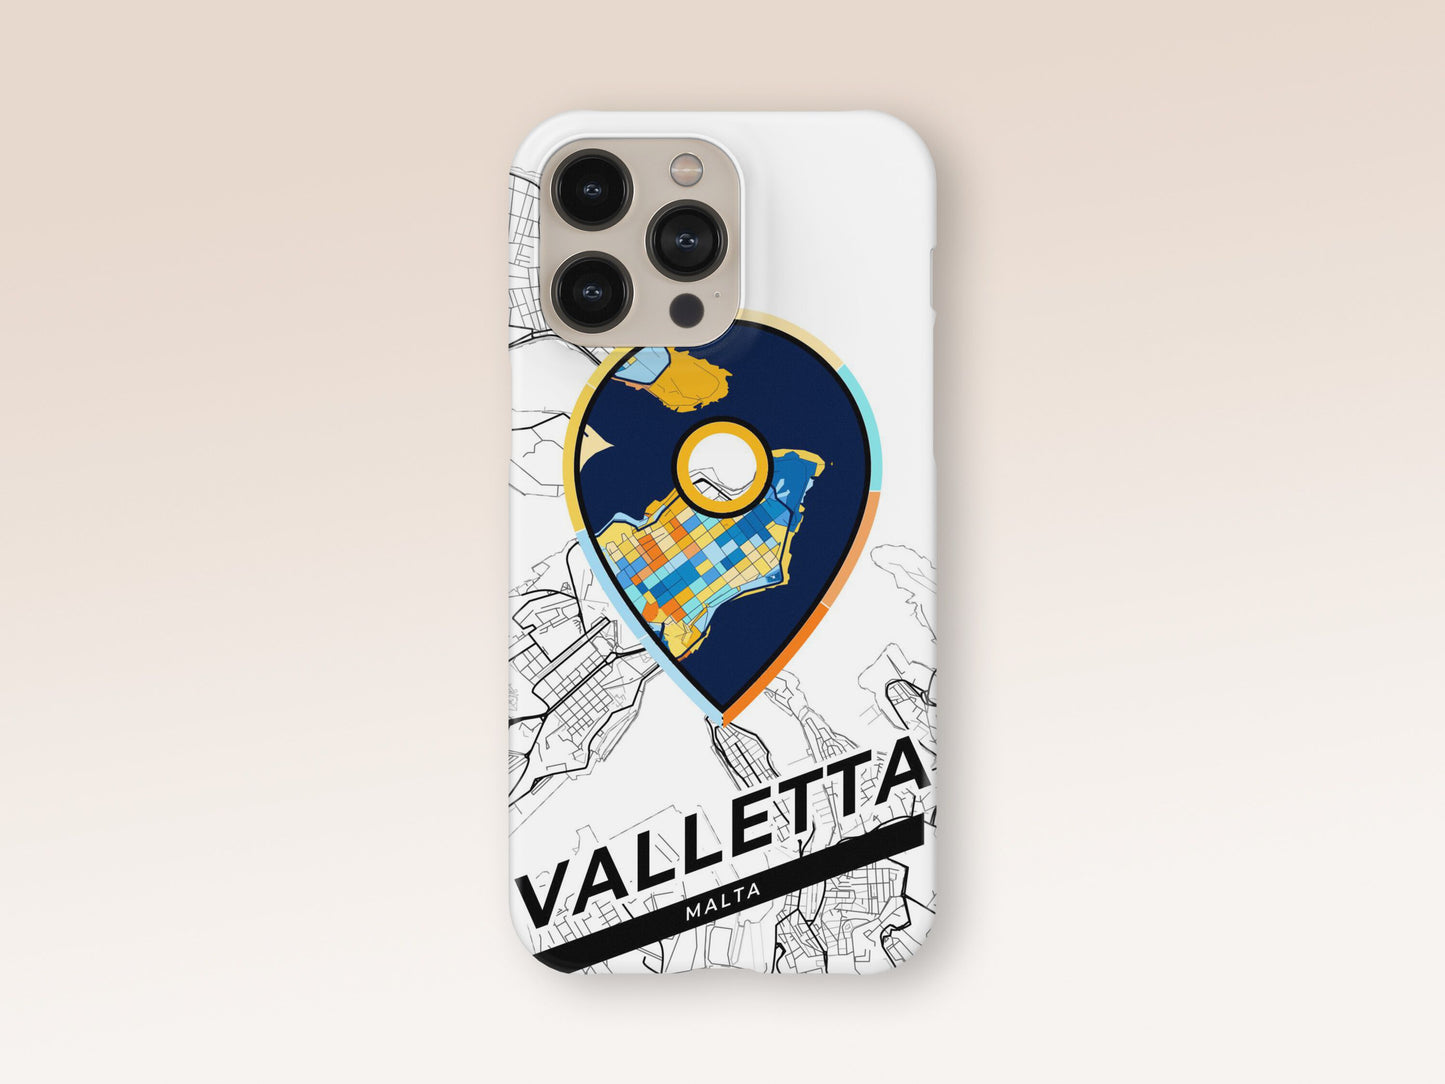 Valletta Malta slim phone case with colorful icon 1